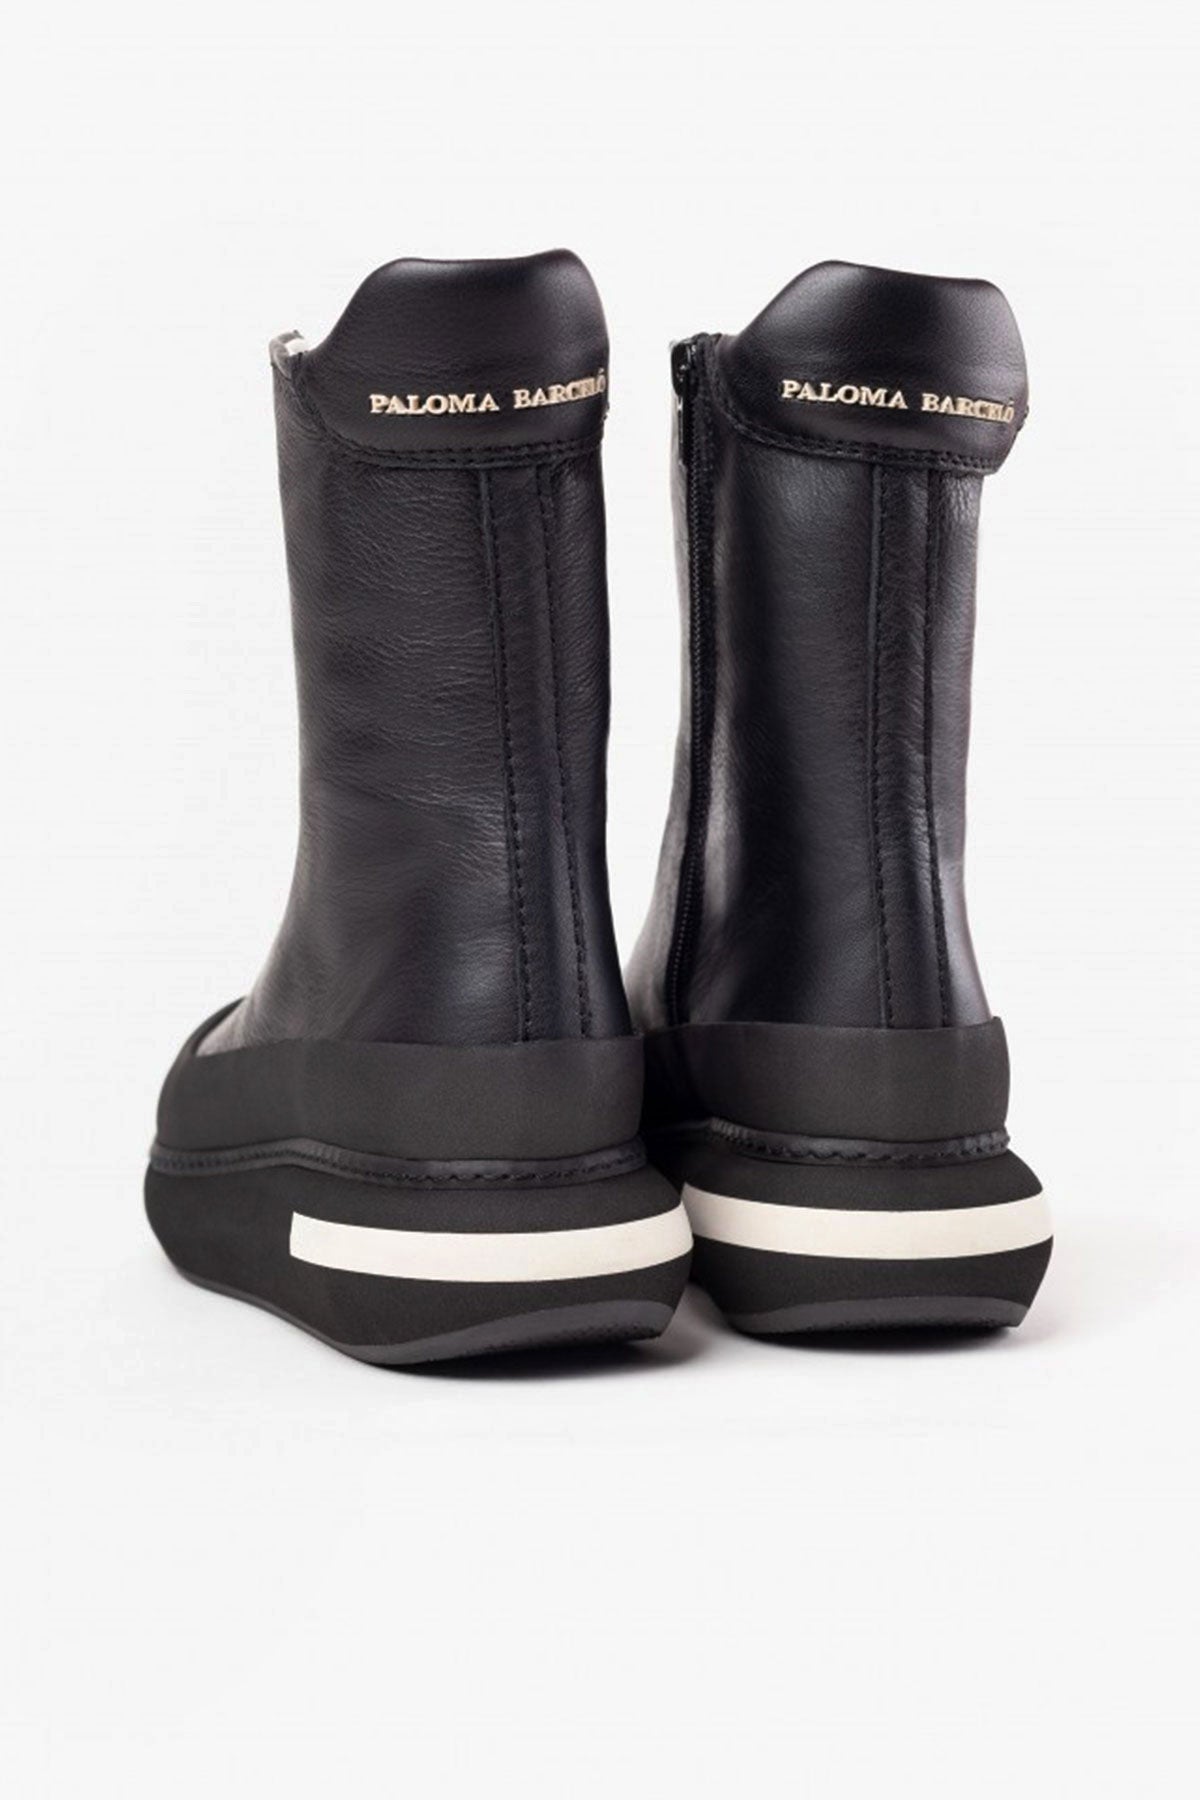 Paloma Barcelo Sneaker Bot-Libas Trendy Fashion Store